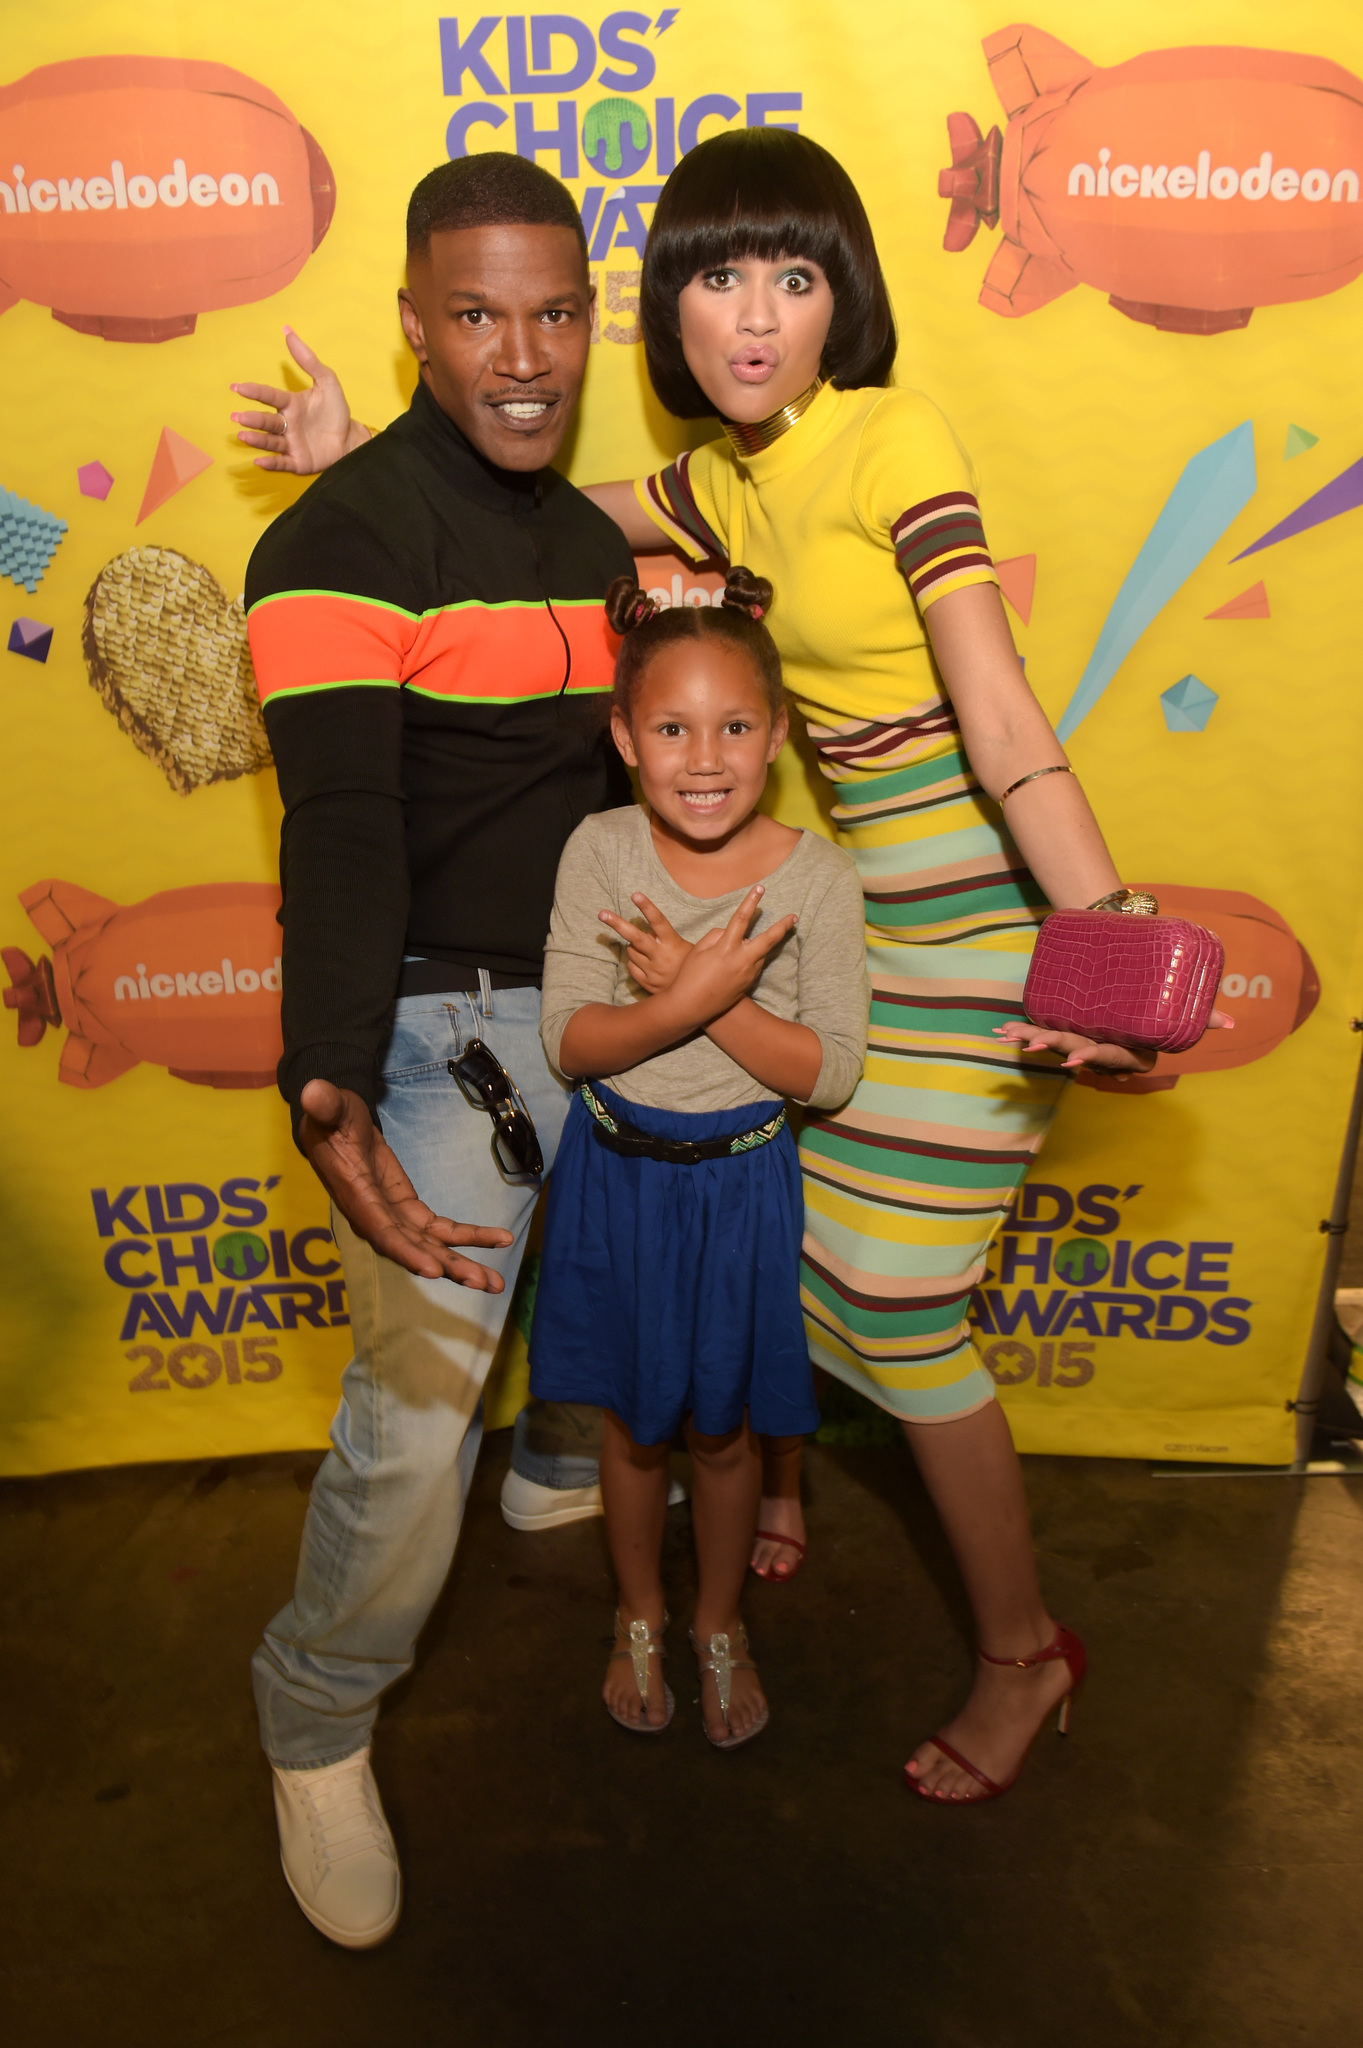 Jamie Foxx and Zendaya at event of Nickelodeon Kids' Choice Awards 2015 (2015)